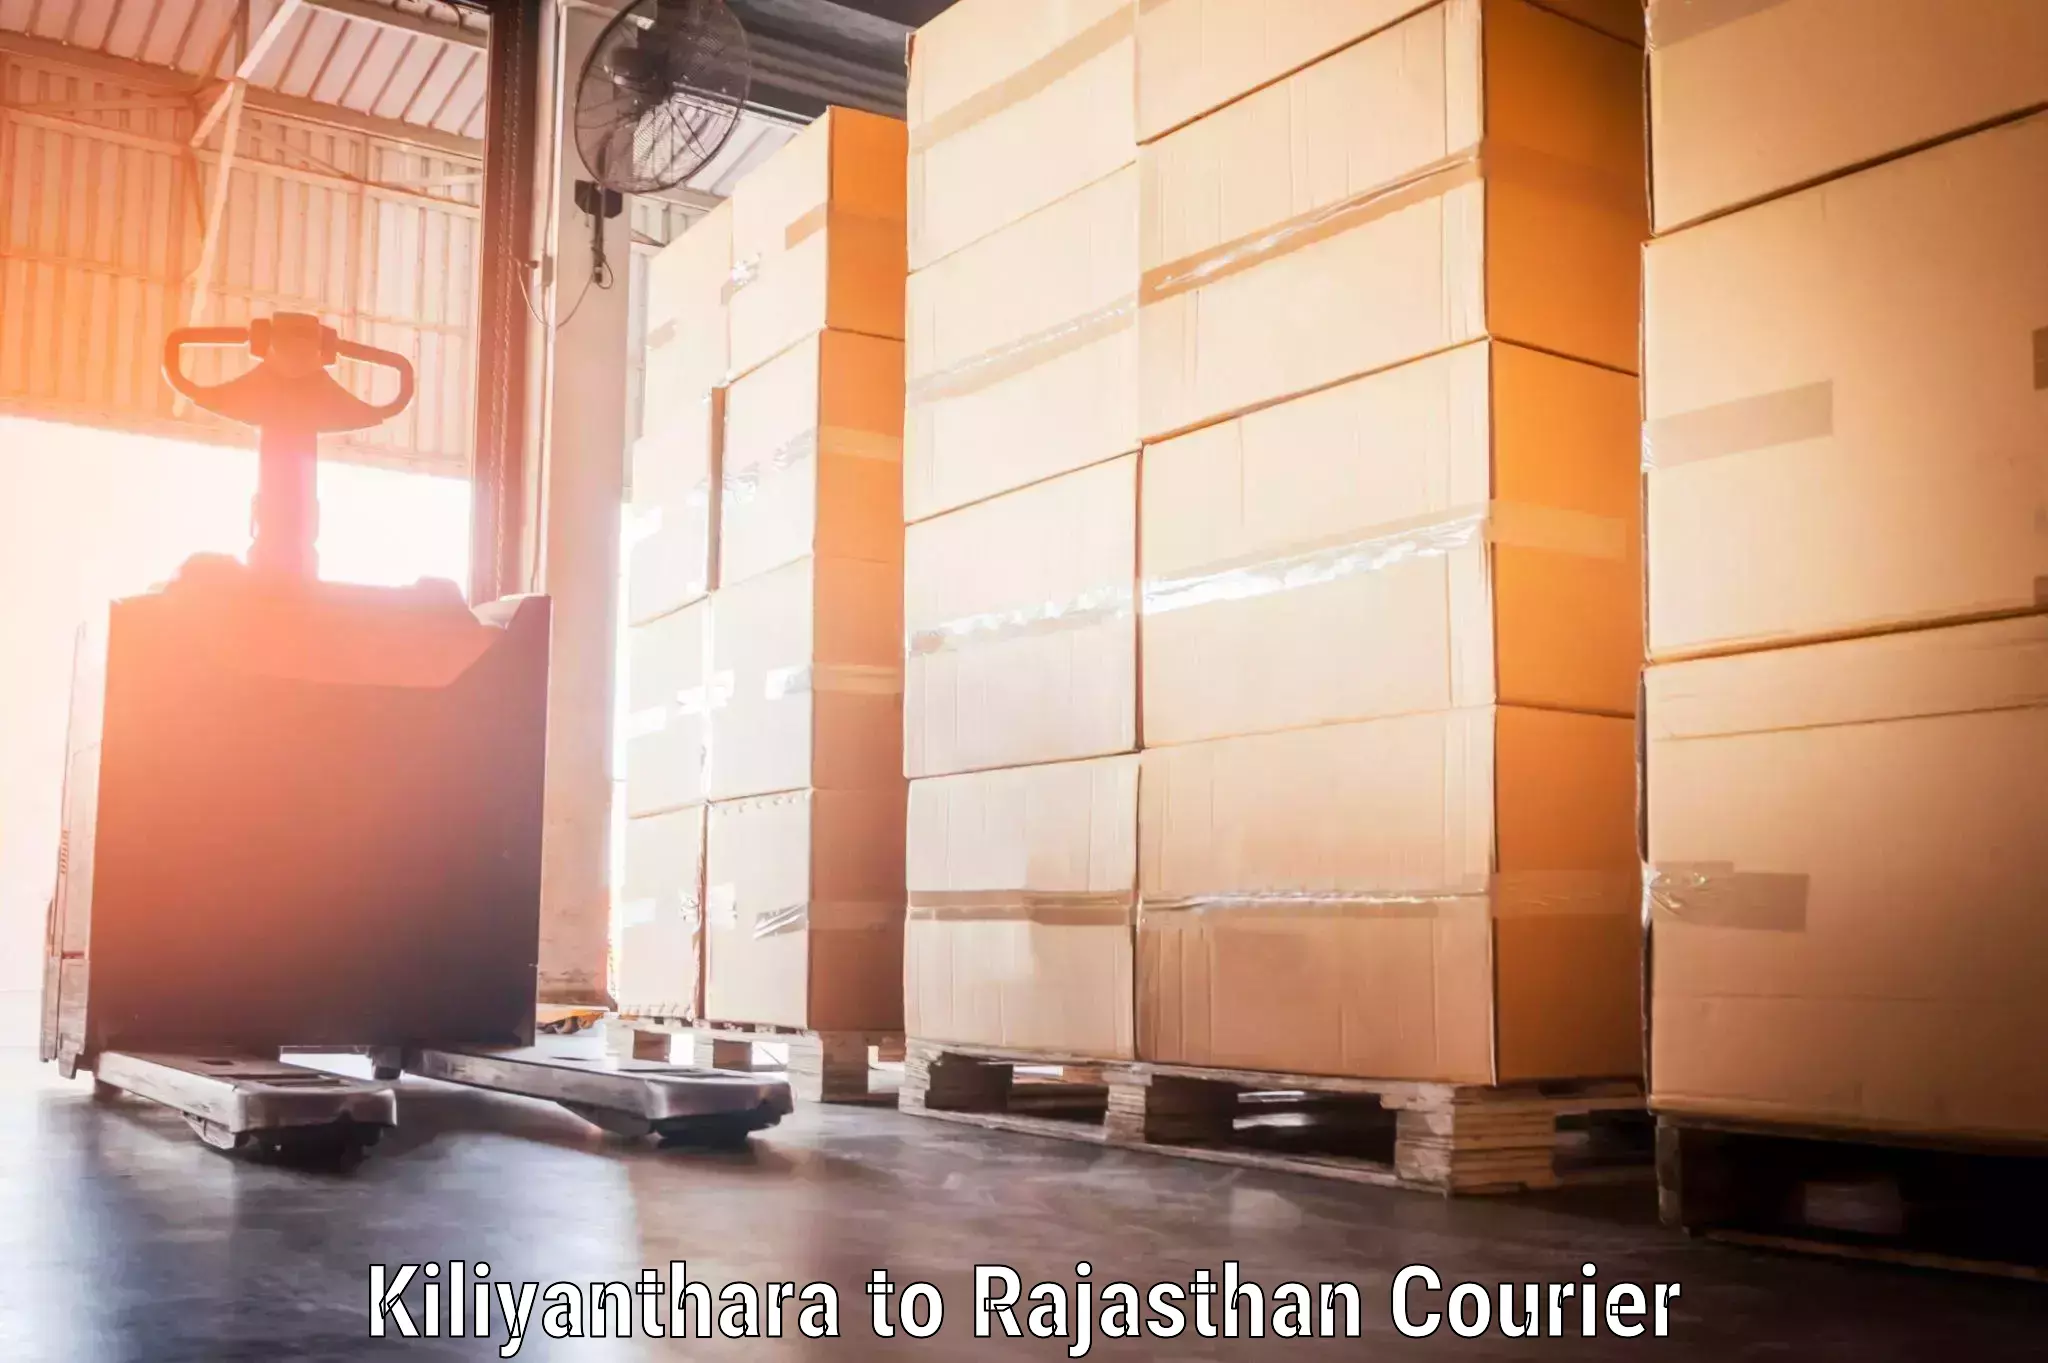 Digital baggage courier in Kiliyanthara to Rajasthan